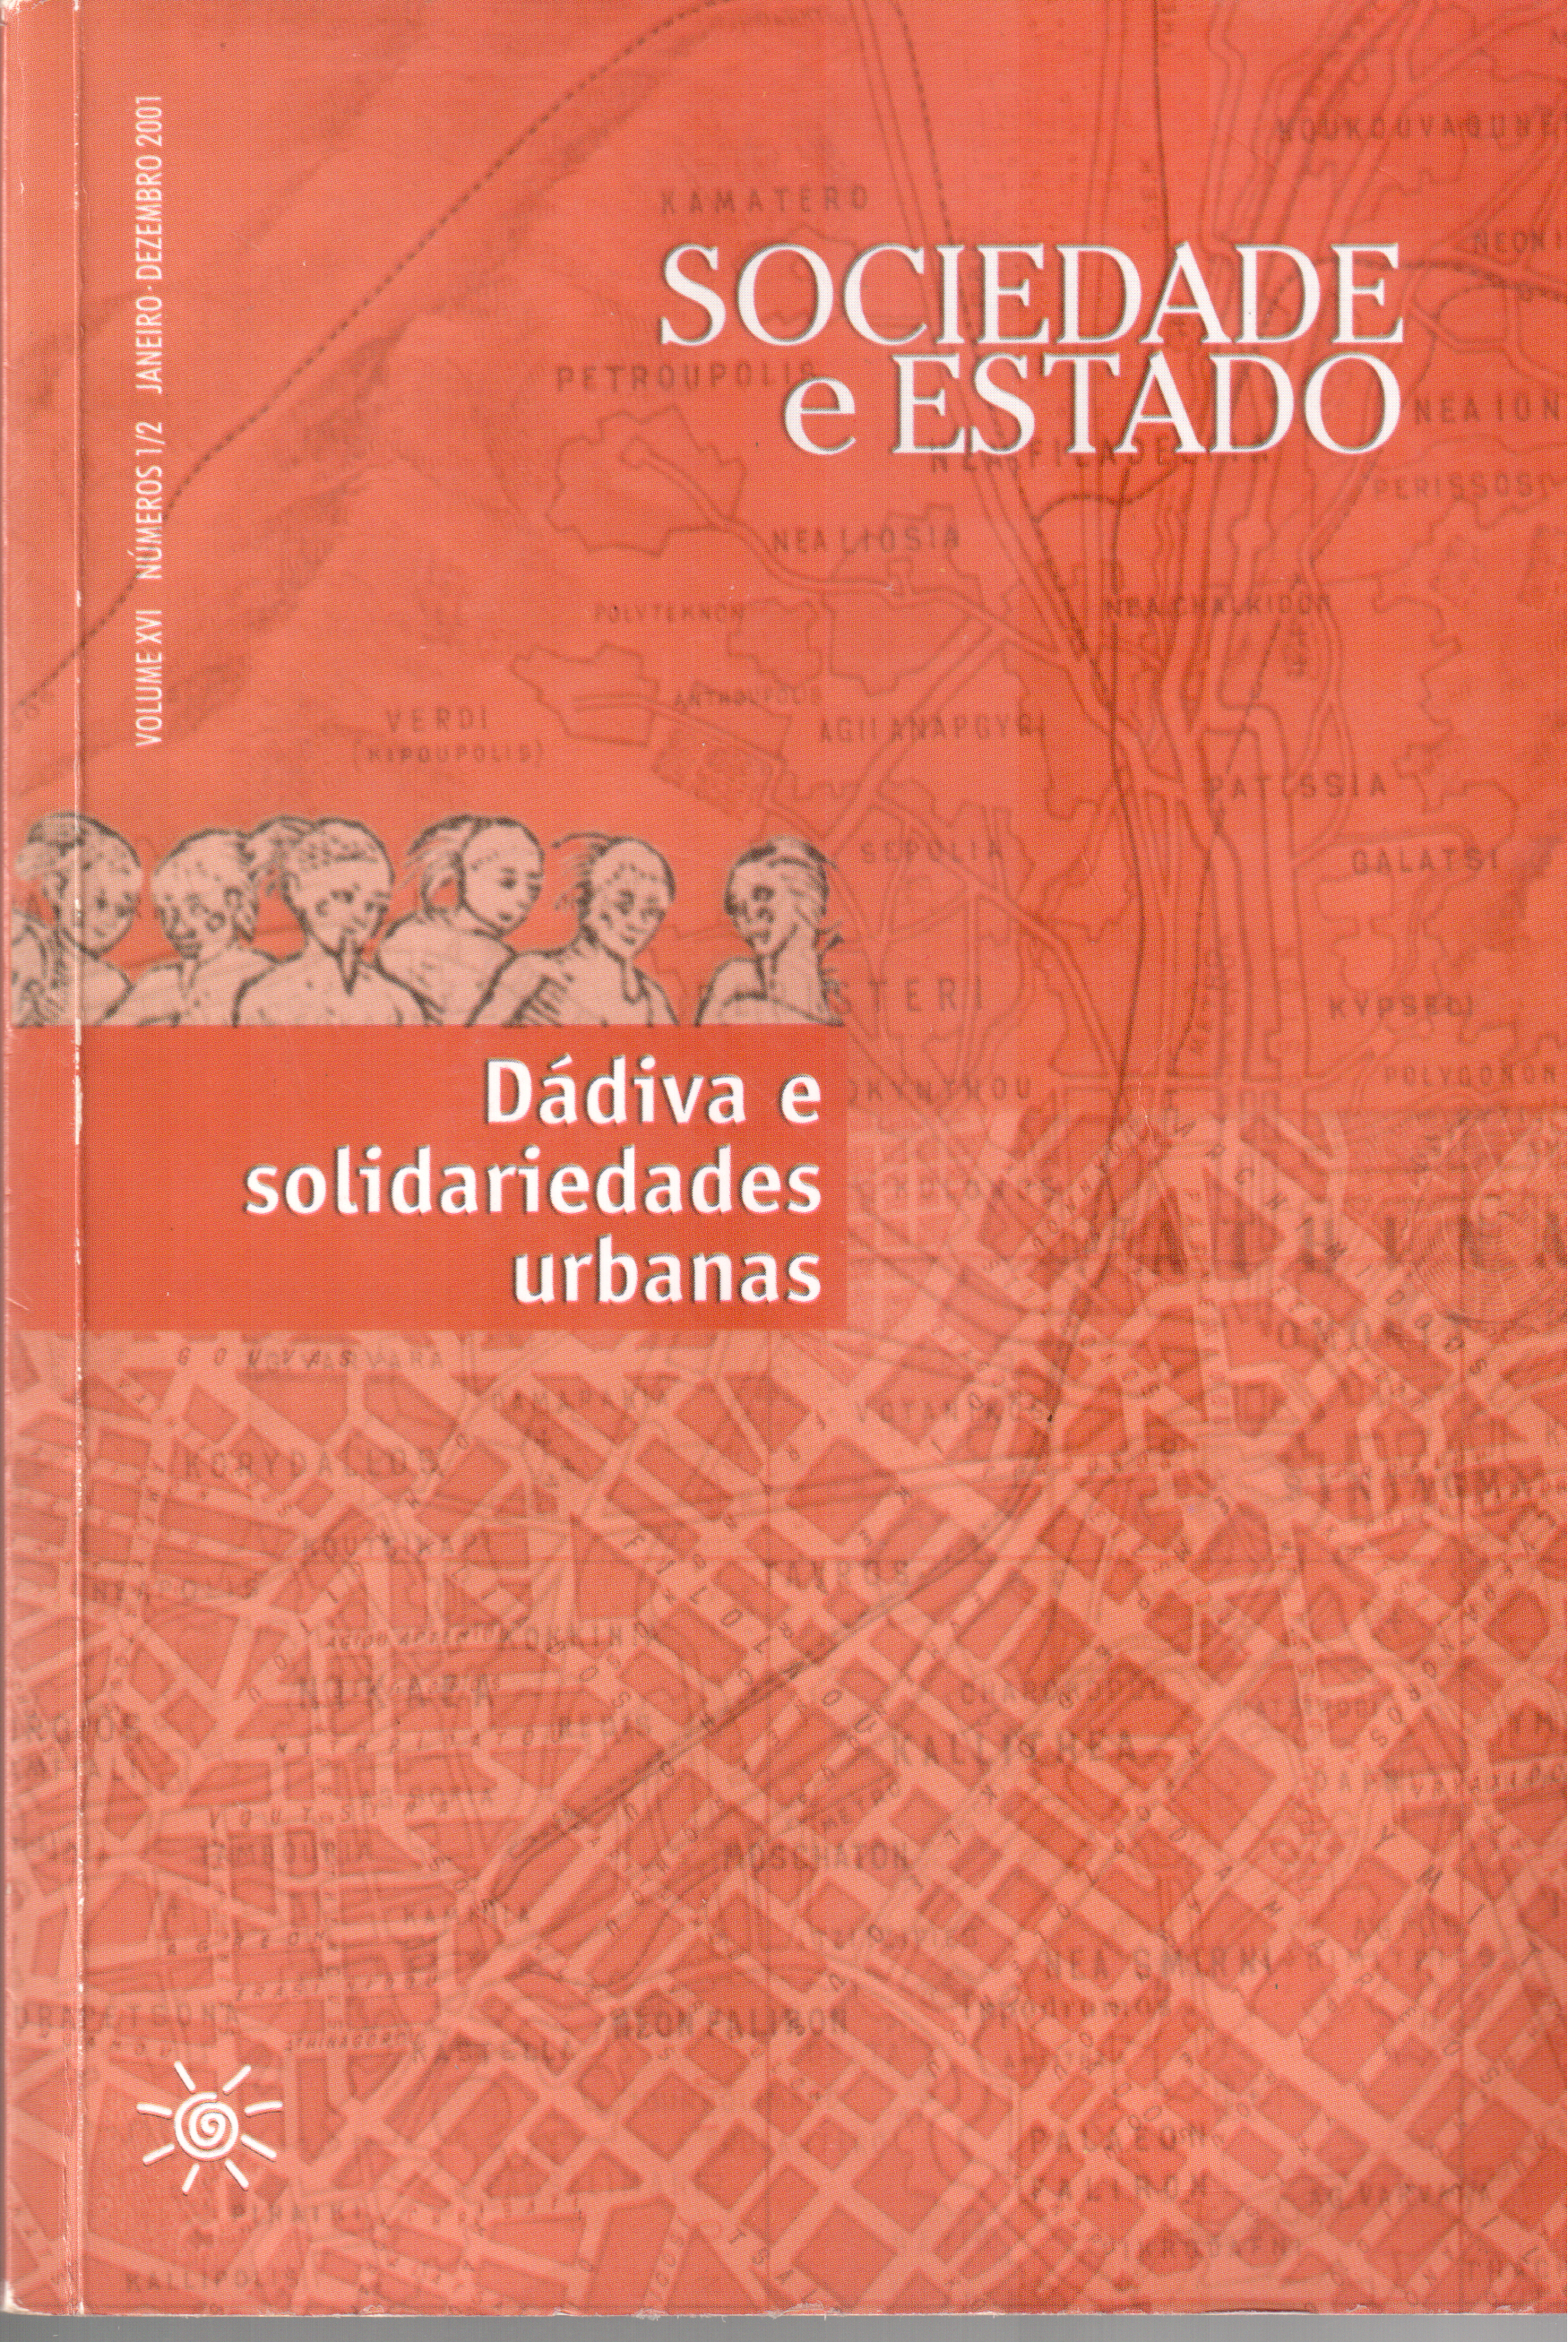 					Visualizar v. 16 n. 01 e 02 (2001): Dádiva e solidariedades urbanas
				